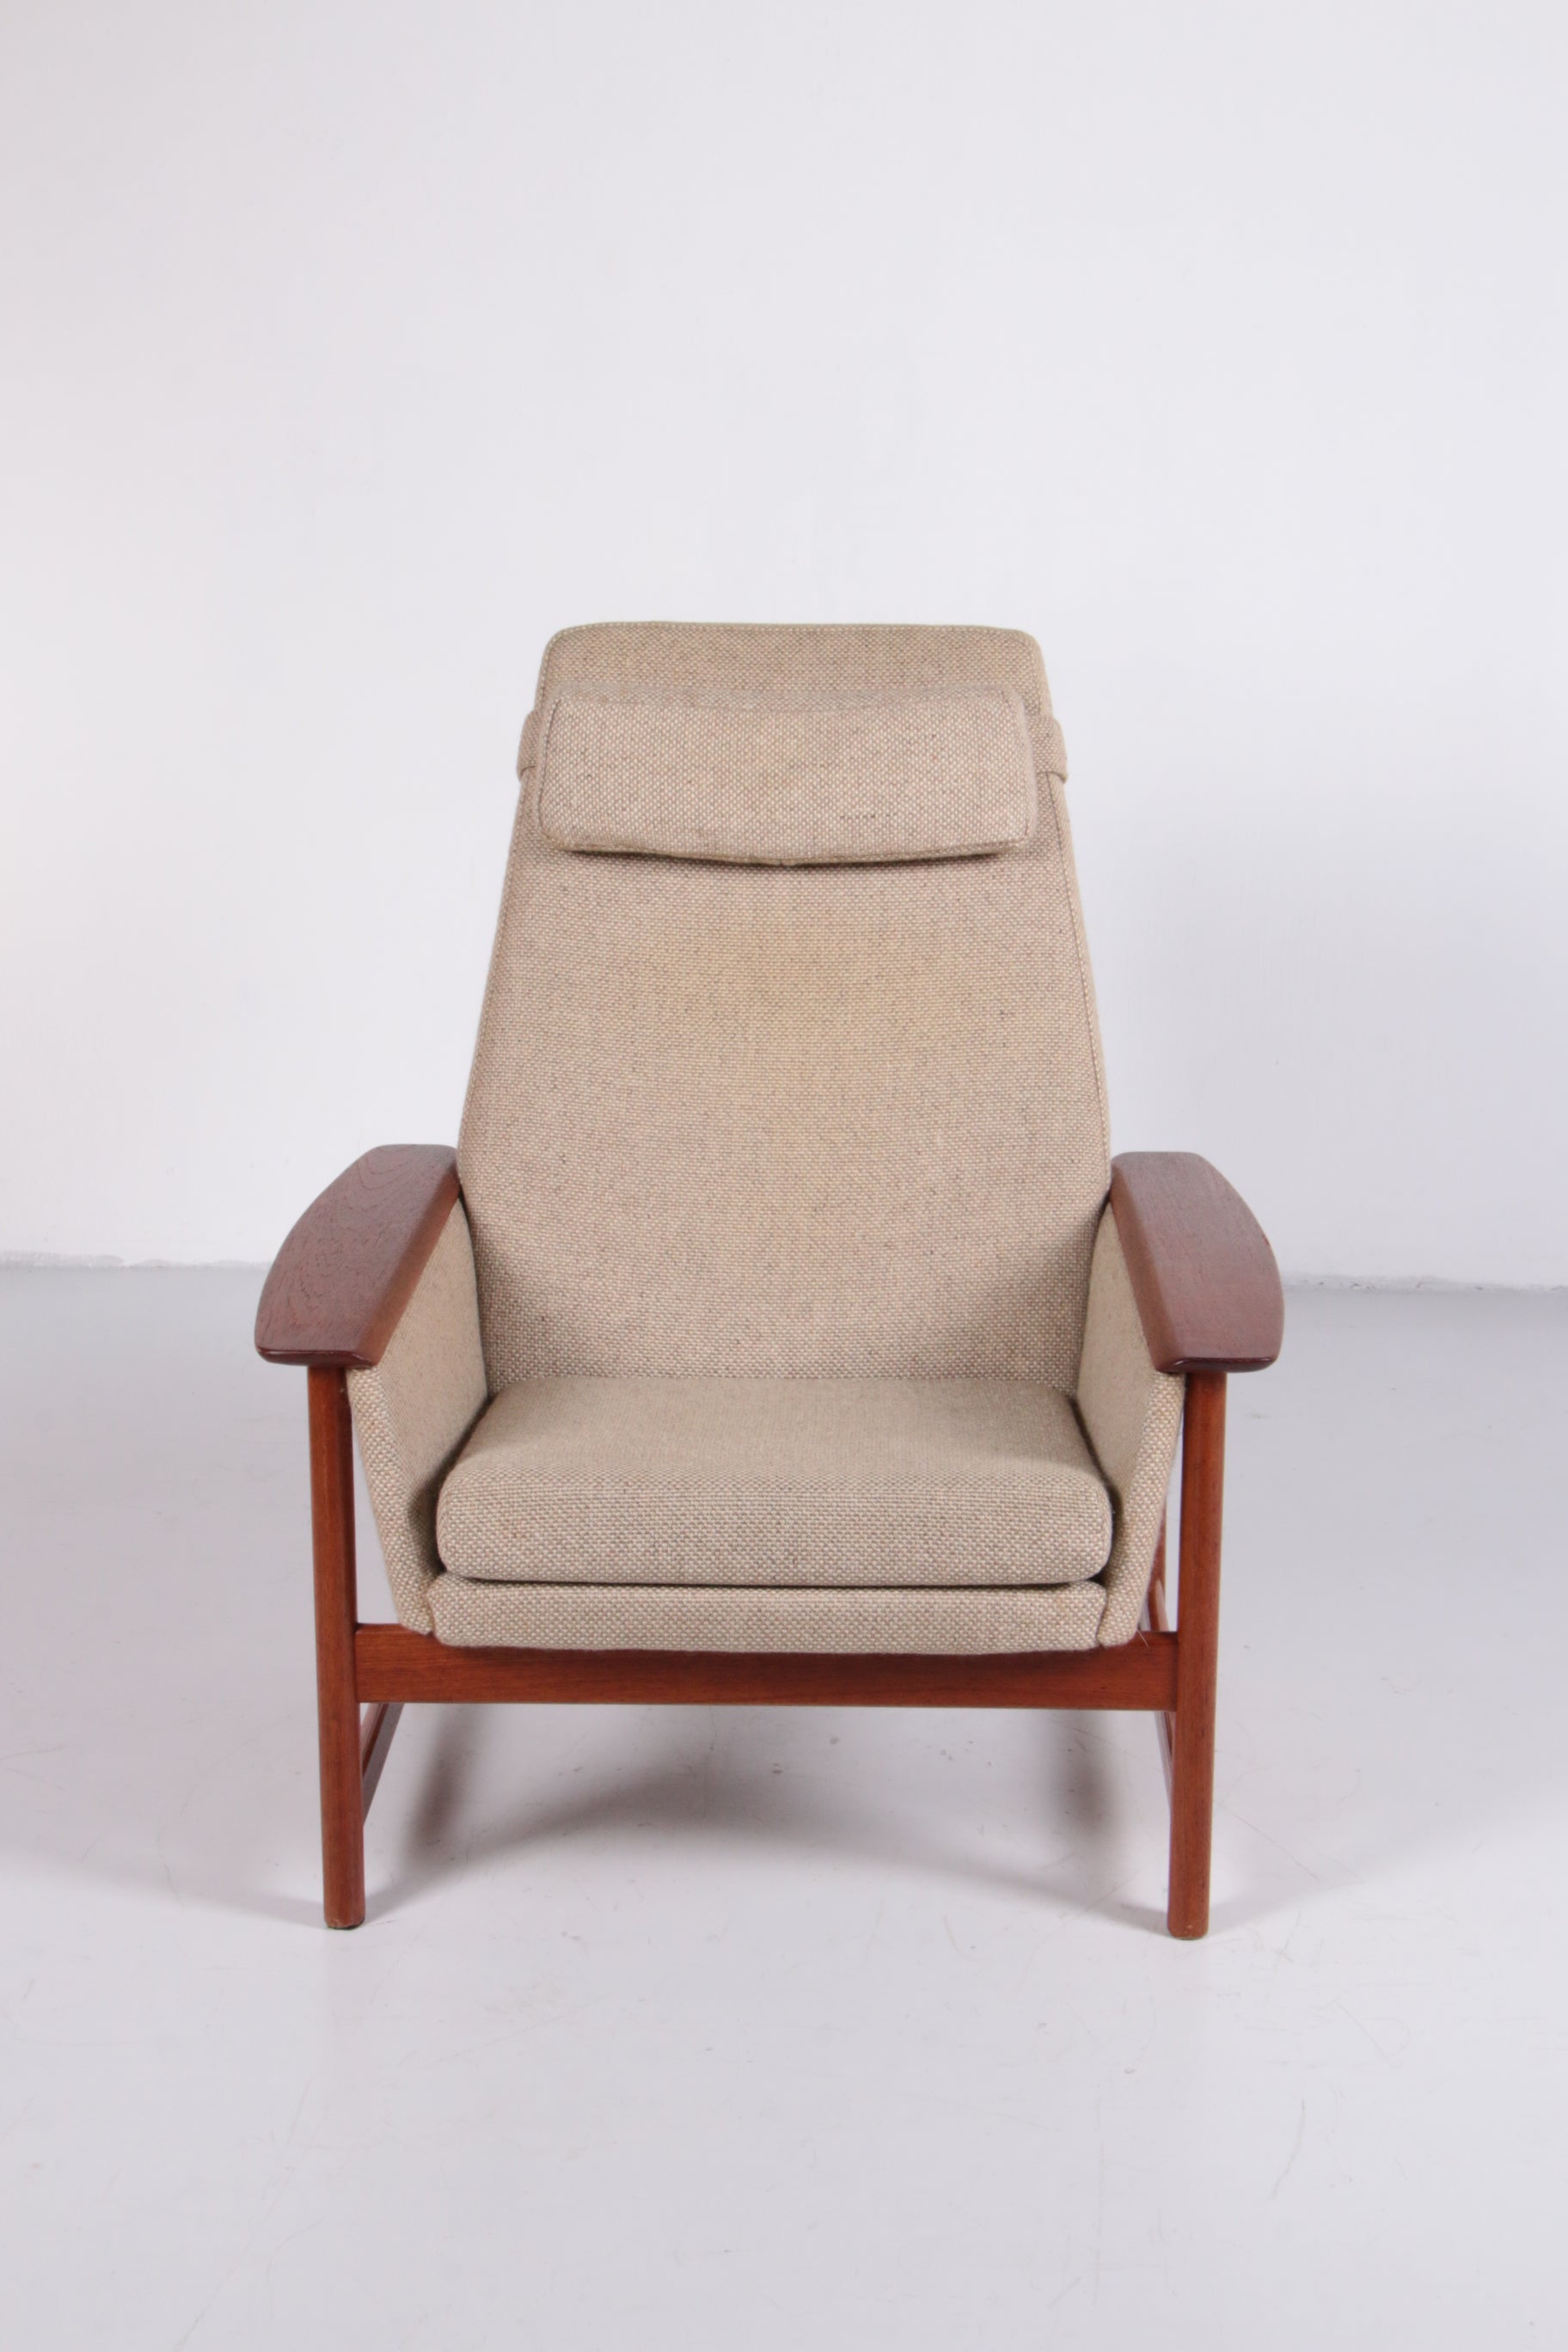 Top Vintage Bankstel en 2 fauteuils gemaakt van teak hout,1960 Nederland.